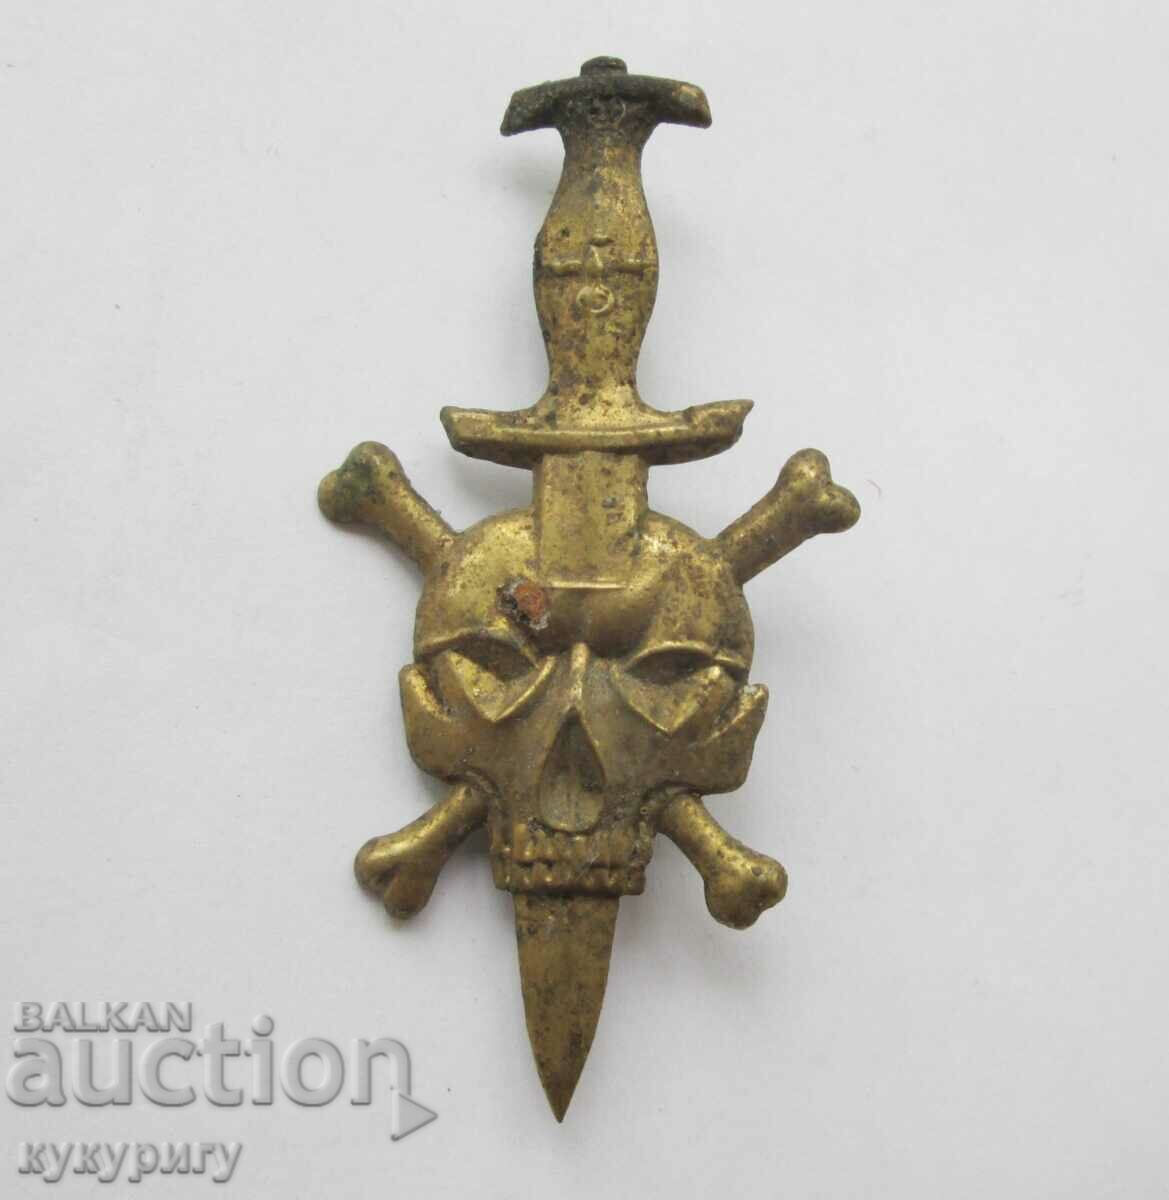 Veche emblemă de insignă din bronz cu oase ale craniului